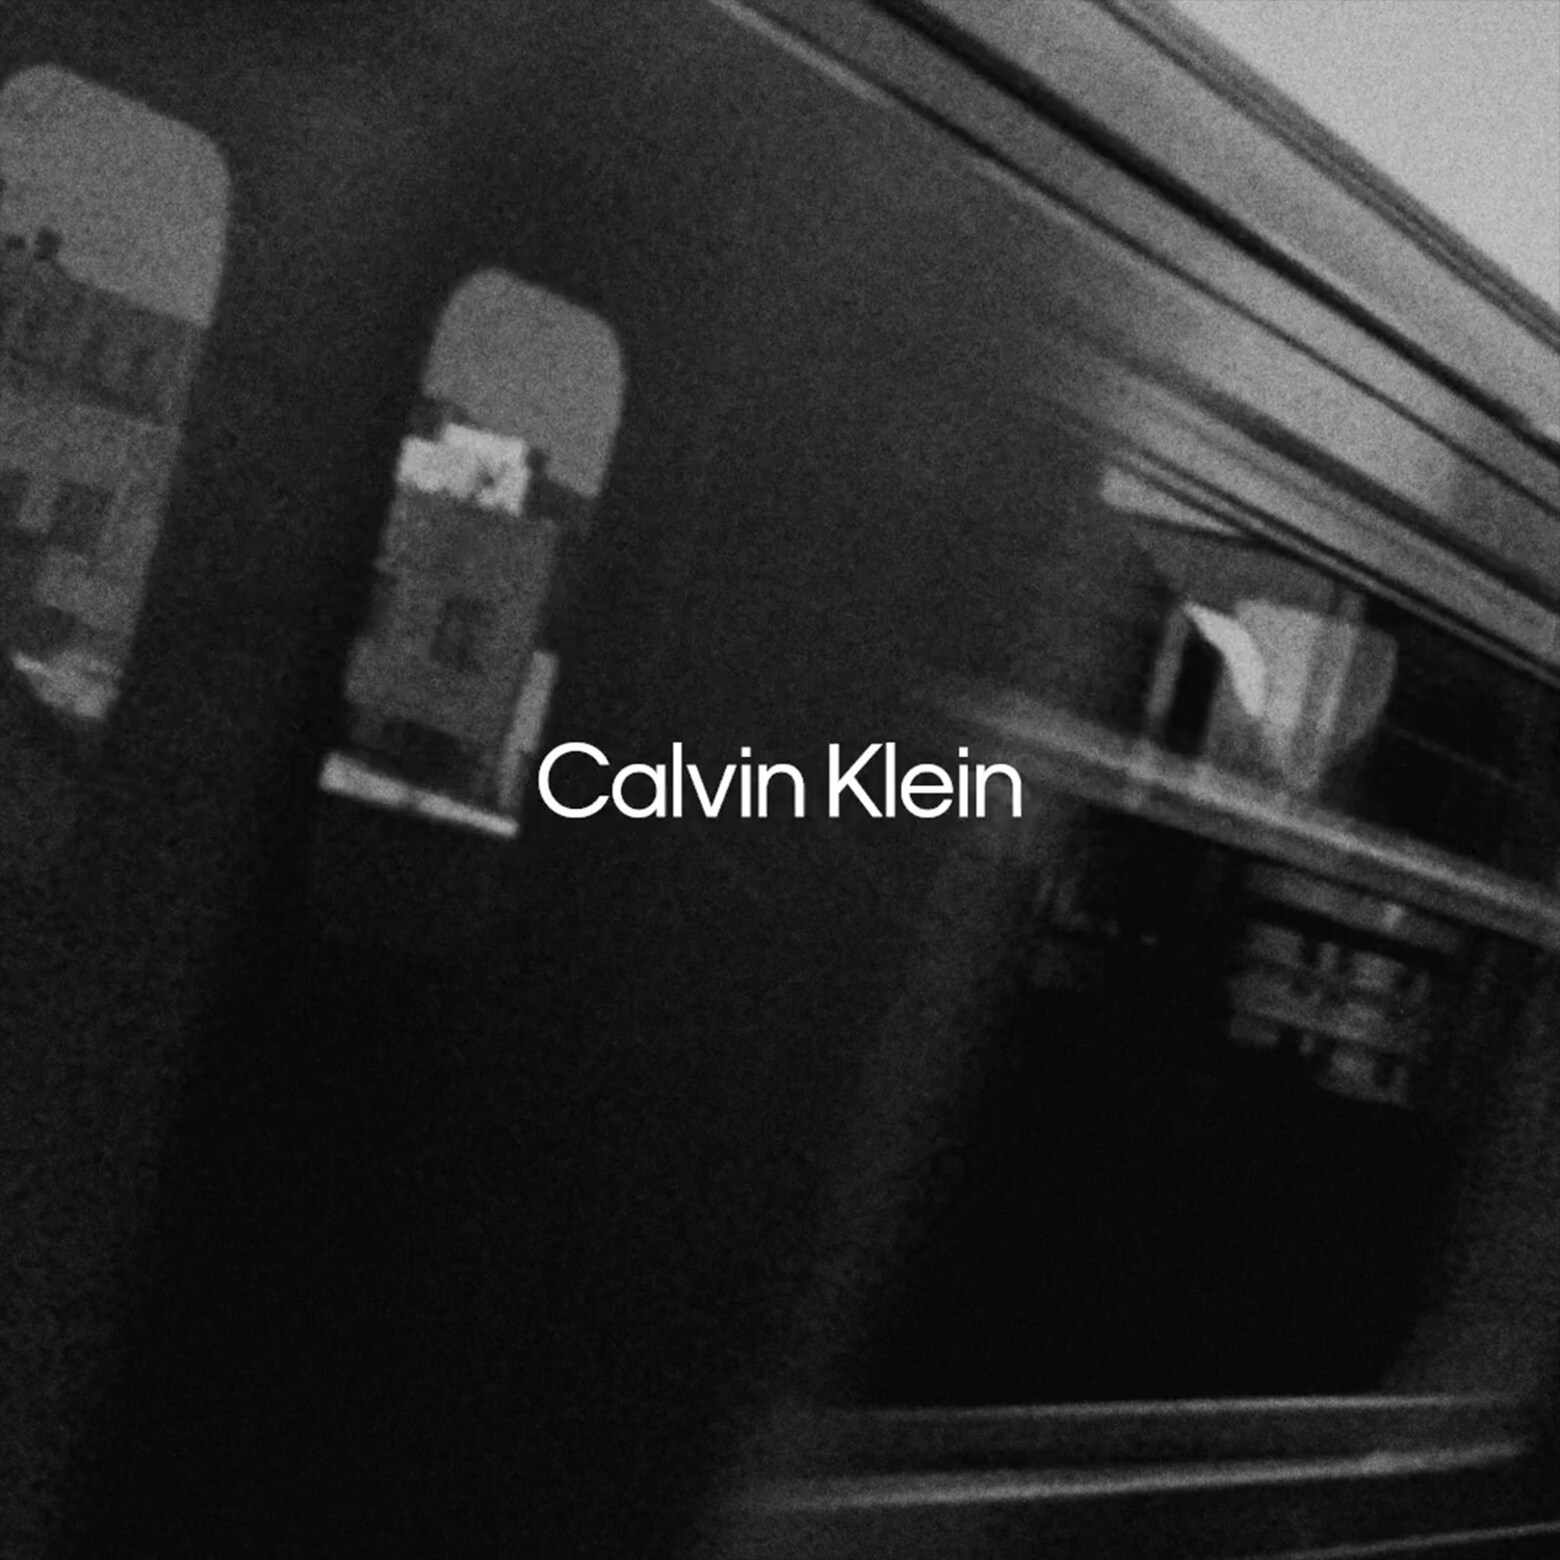 Archív 90. rokov Calvin Klein